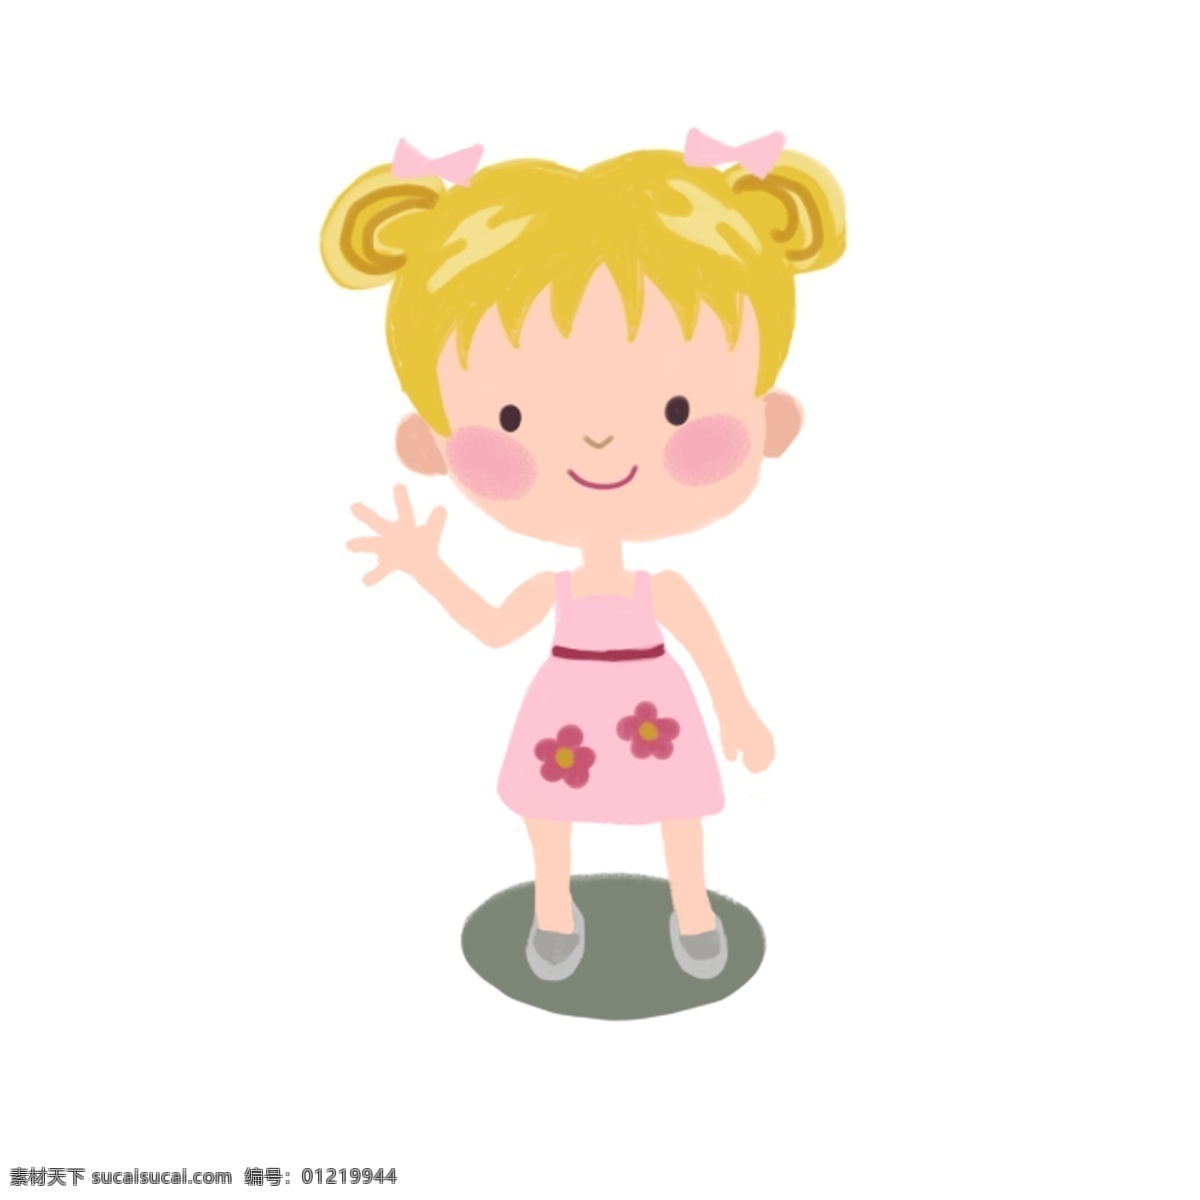 夏季 着装 卡通 儿童 女孩 粉色 吊带 裙 夏季着装 吊带裙